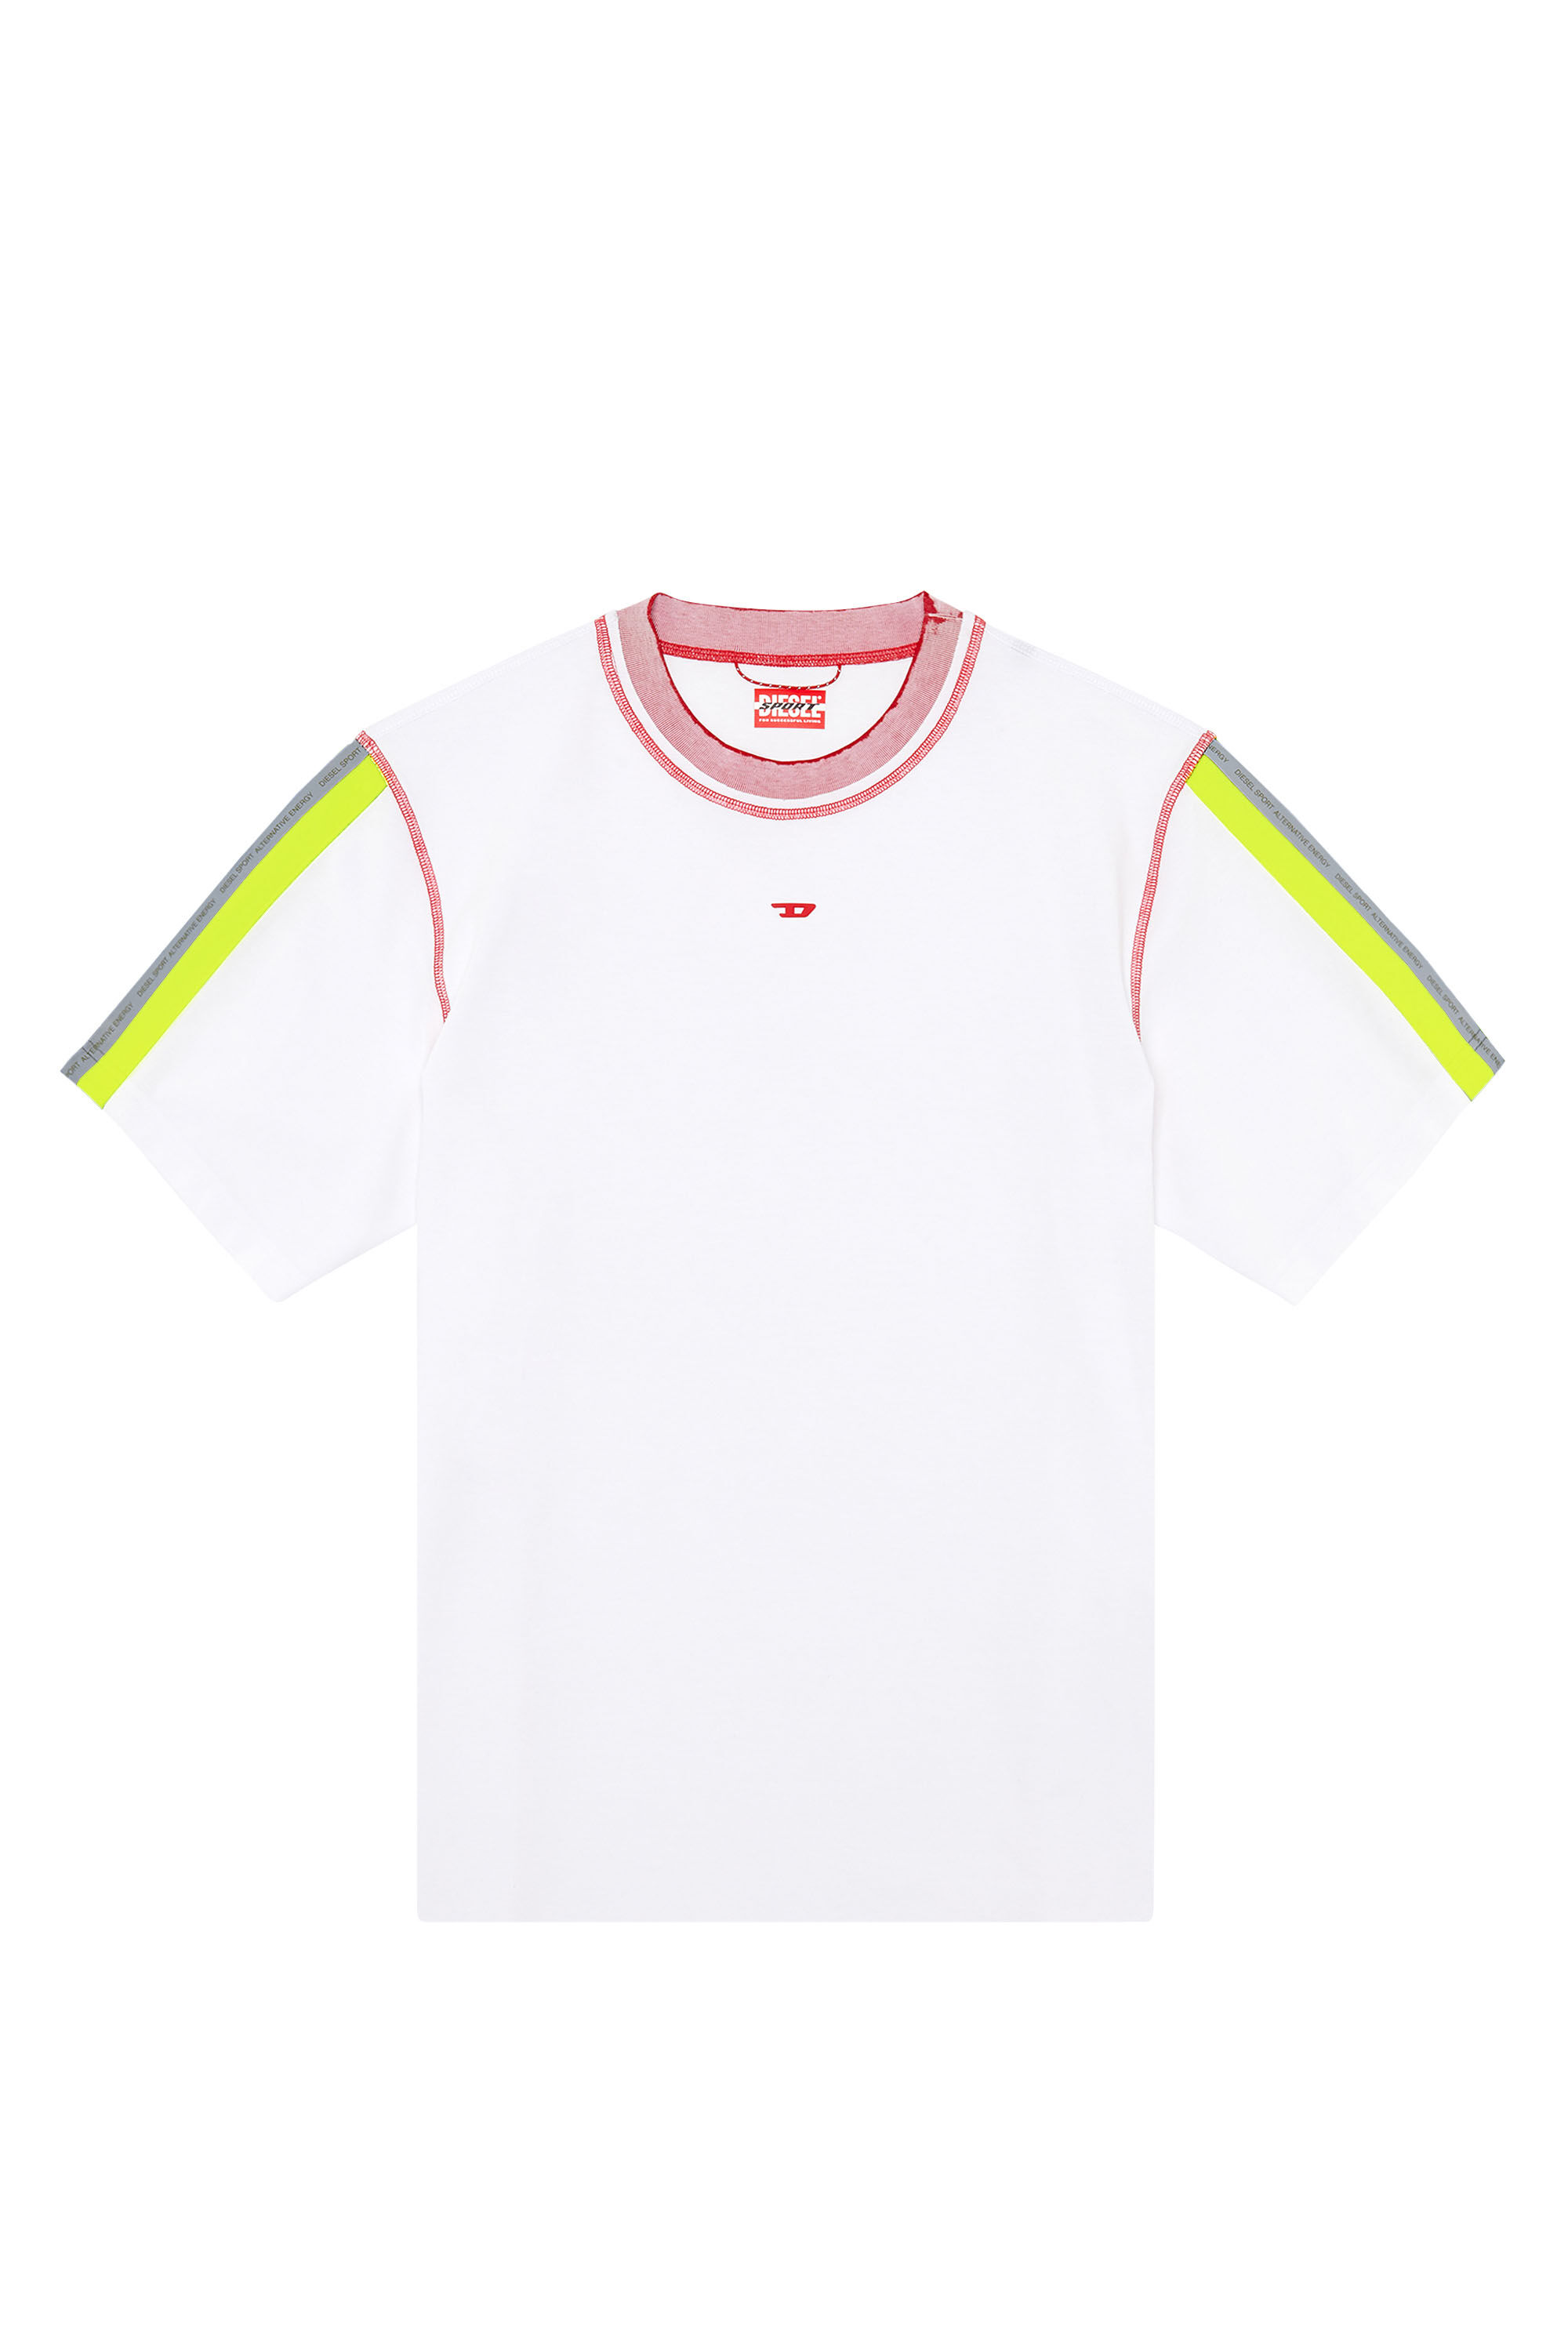 Diesel - AMTEE-NILO-HT03, Homme T-shirt avec bandes réfléchissantes in Polychrome - Image 2